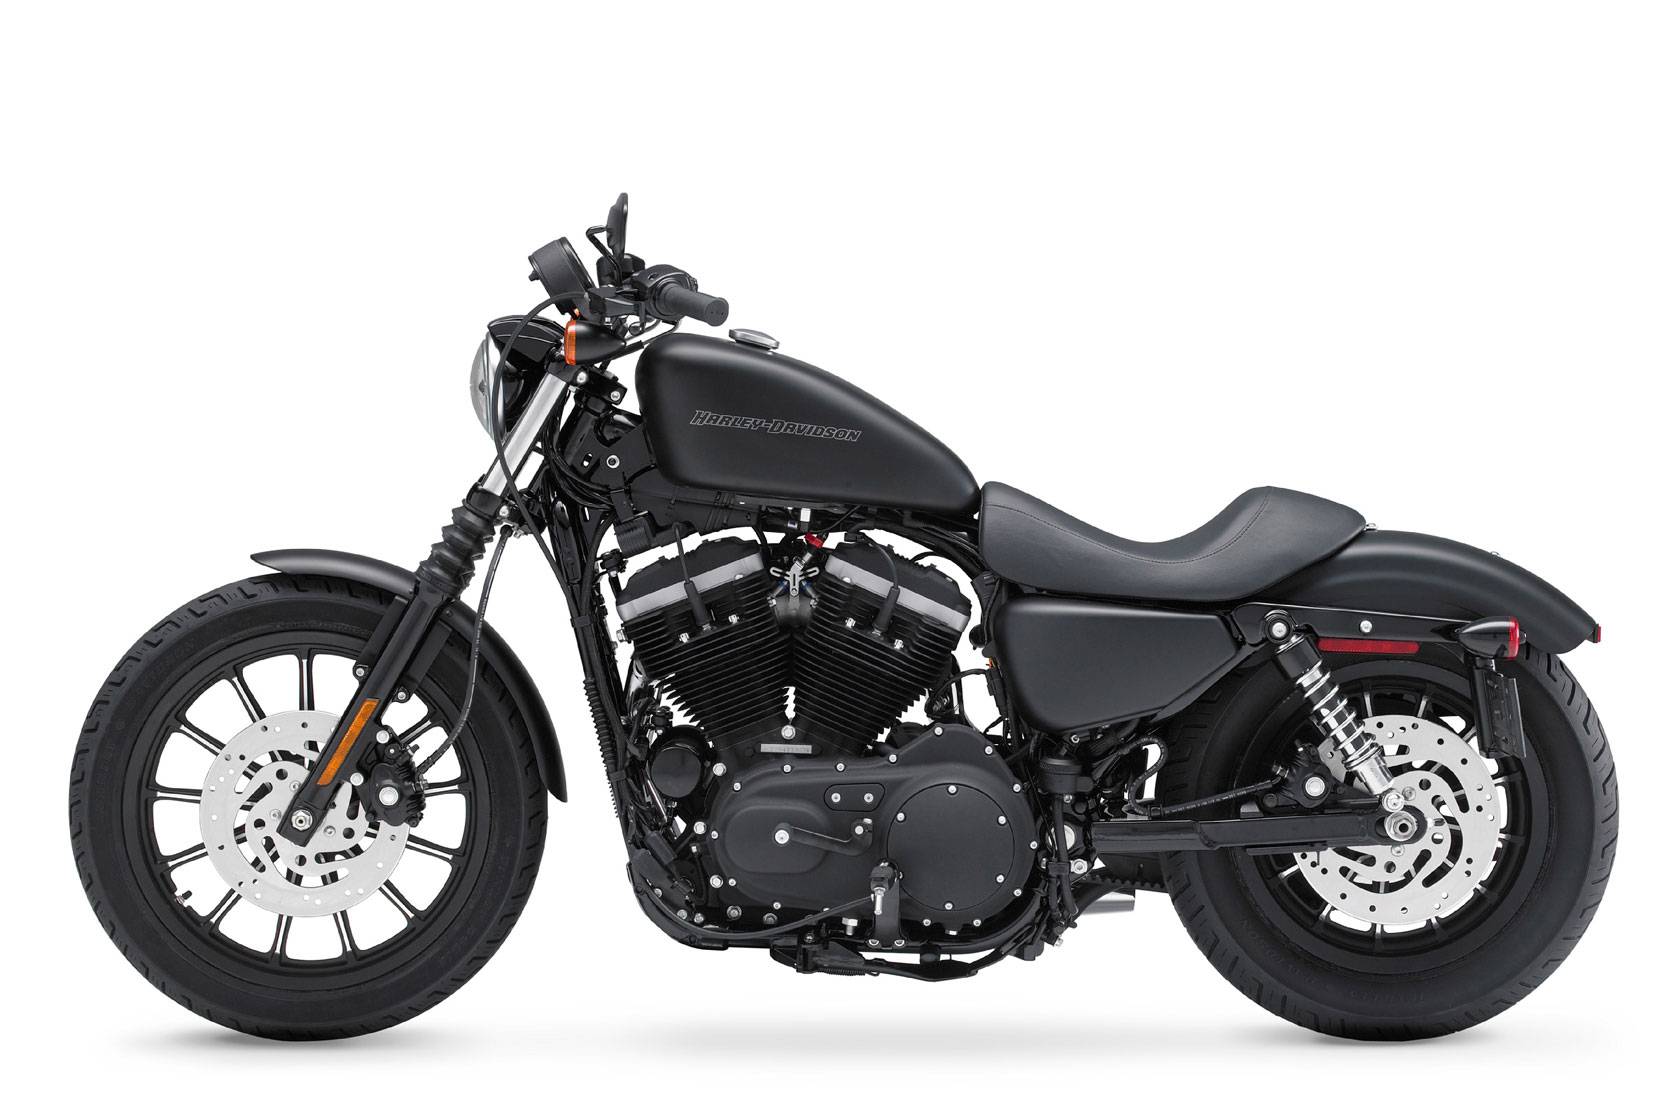 Harley-davidson sportster iron 883 vs sportster iron 1200 - viking bags